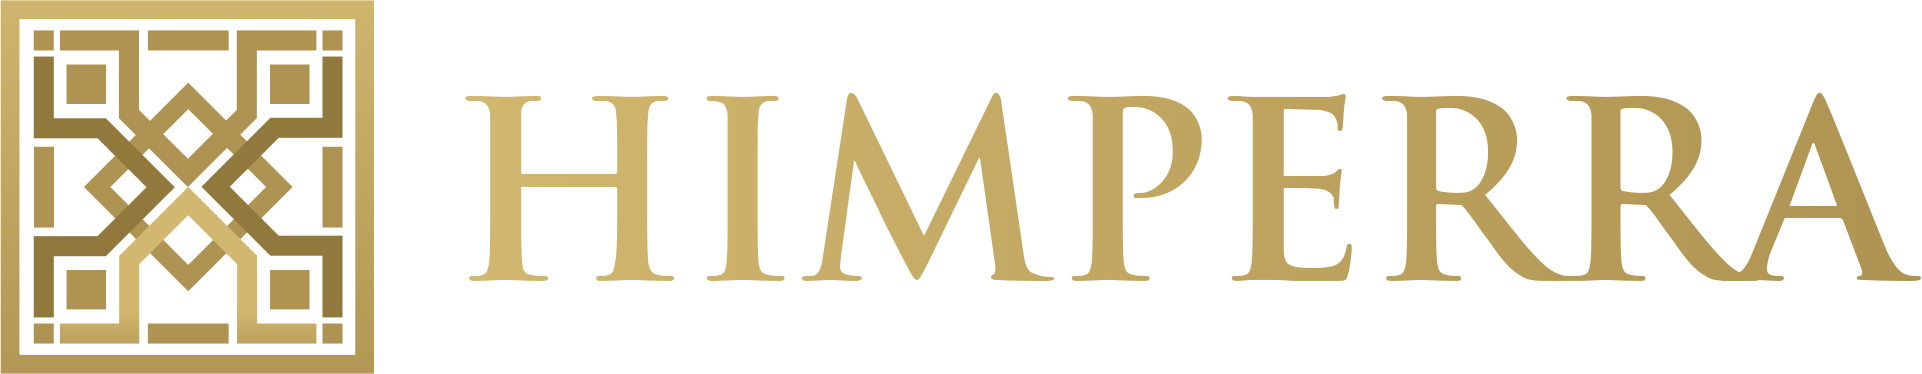 HIMPERRA - Logo